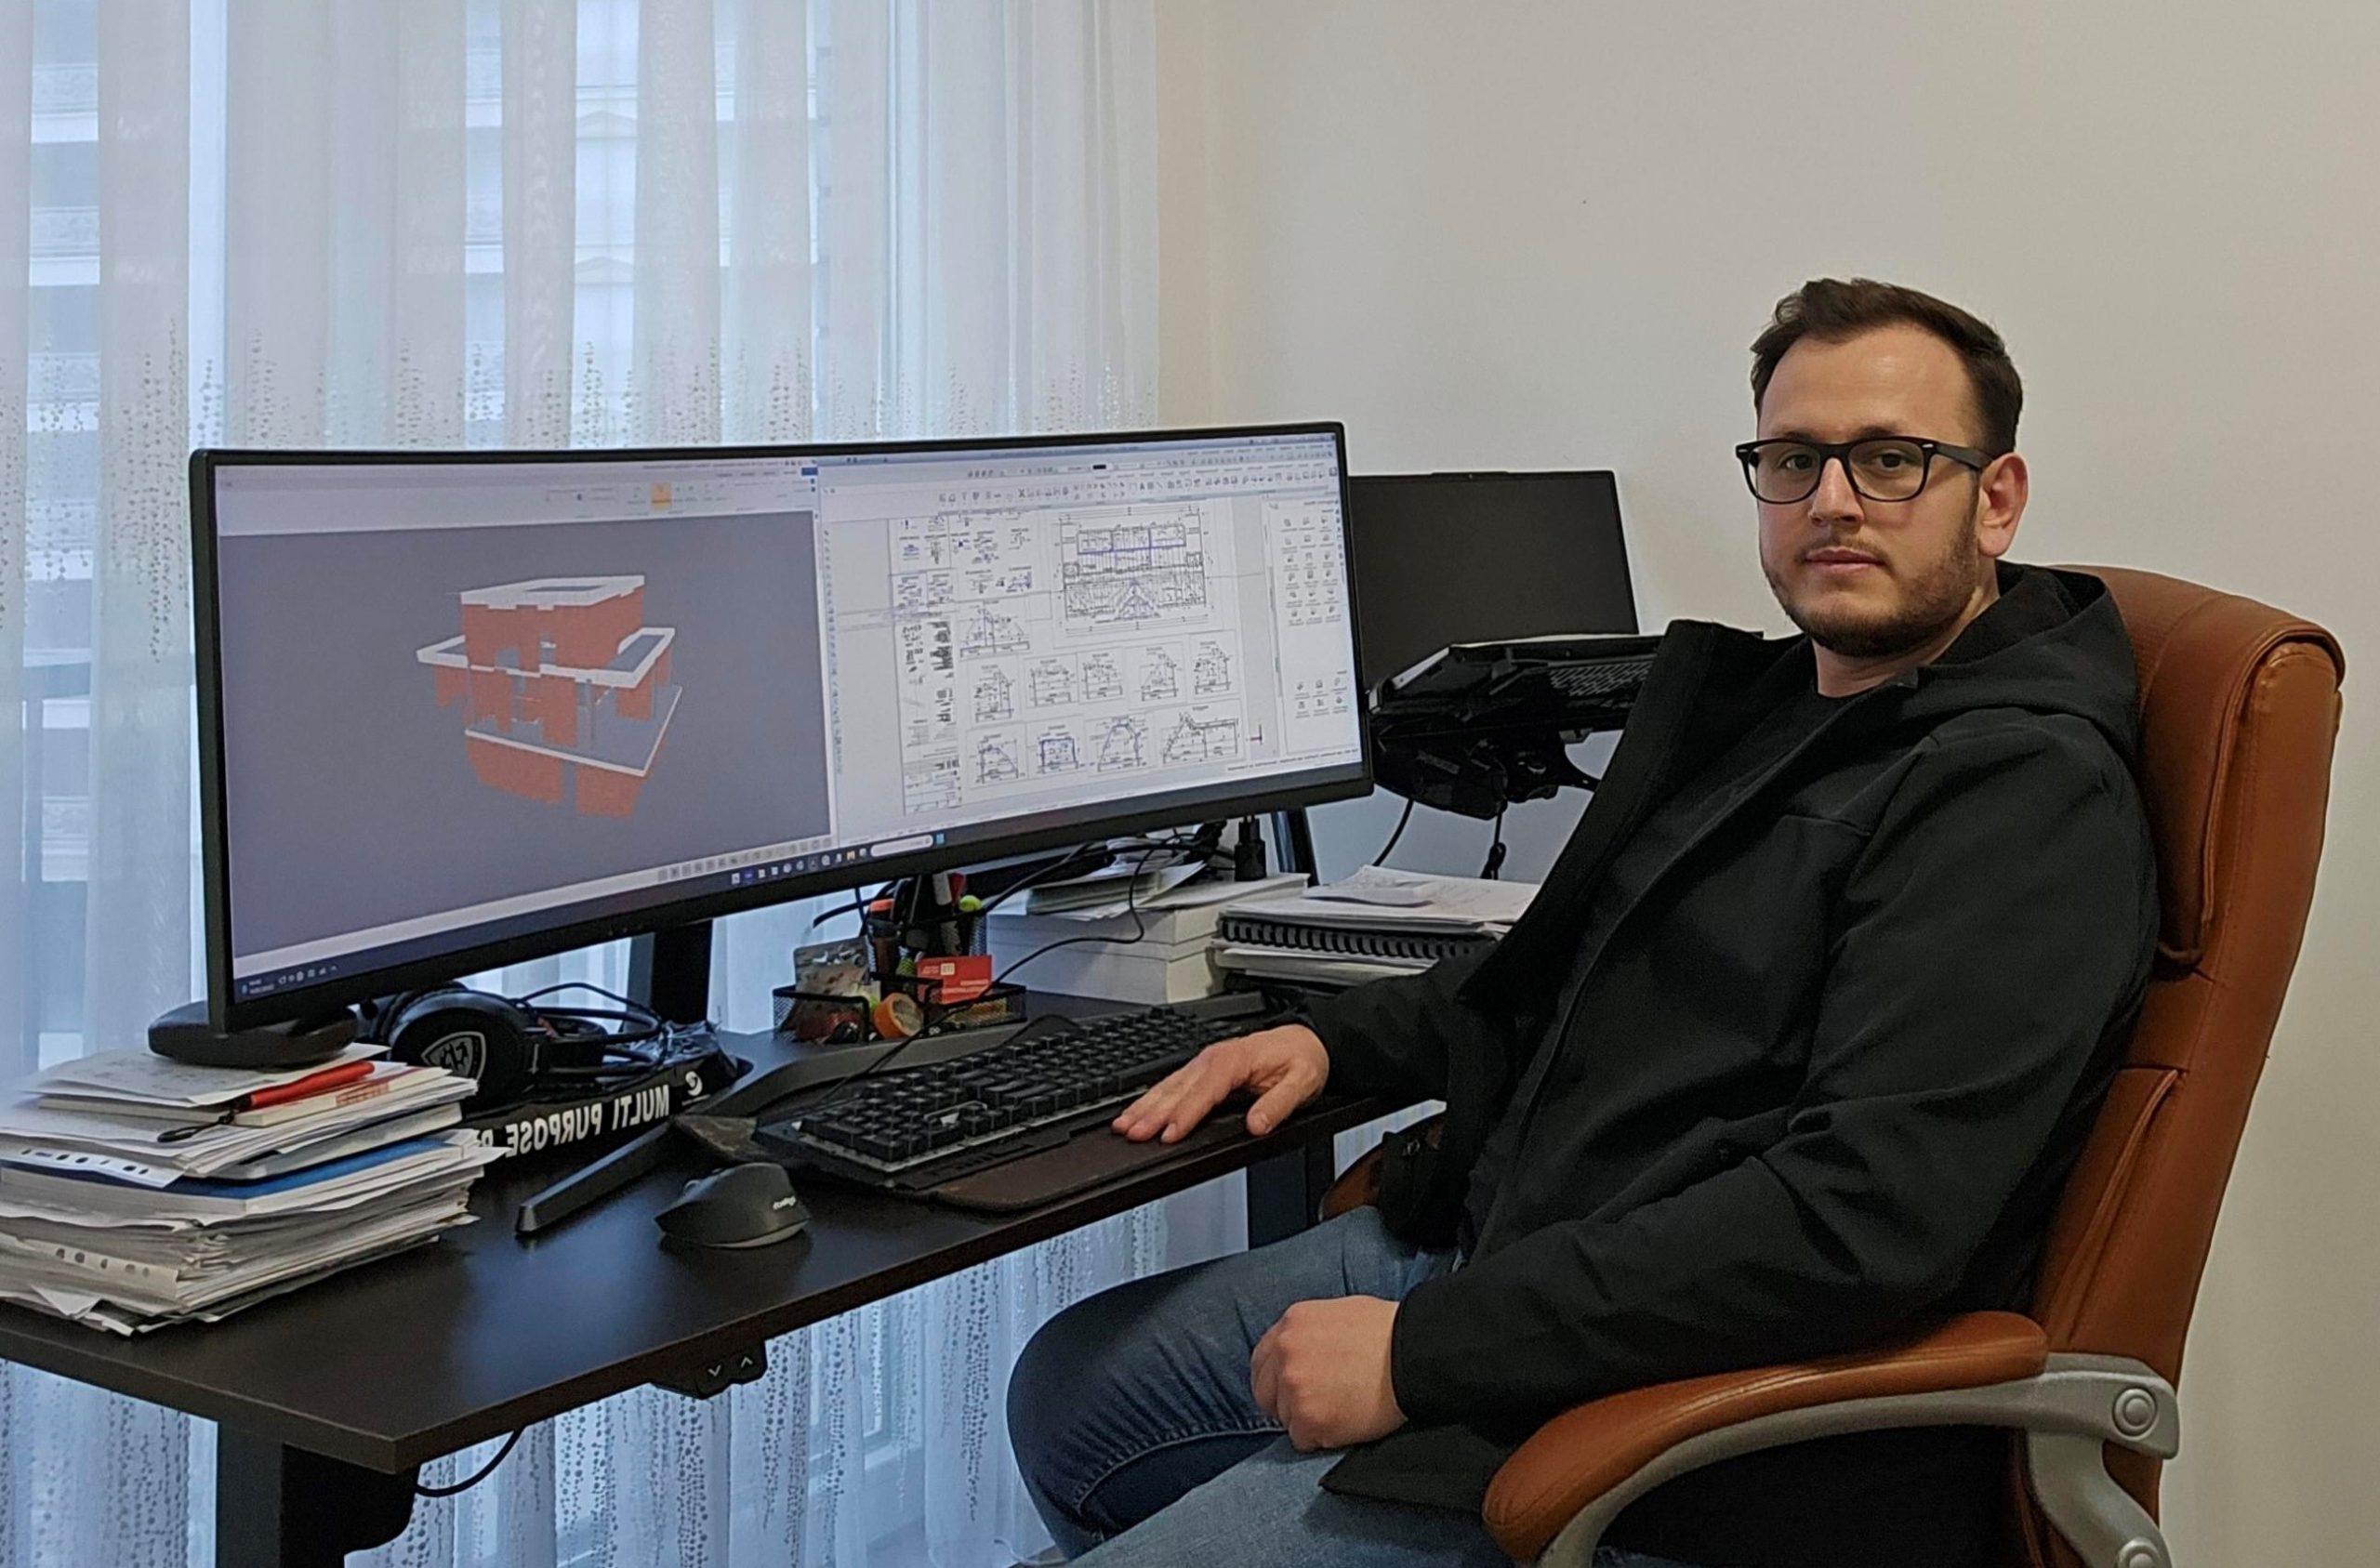 Studenti i UBT-së, Leotrim Januzaj po punon si ndihmës inxhinier dhe në realizimin e projekteve në kompaninë gjermane Ch. Trost GmbH në Berlin